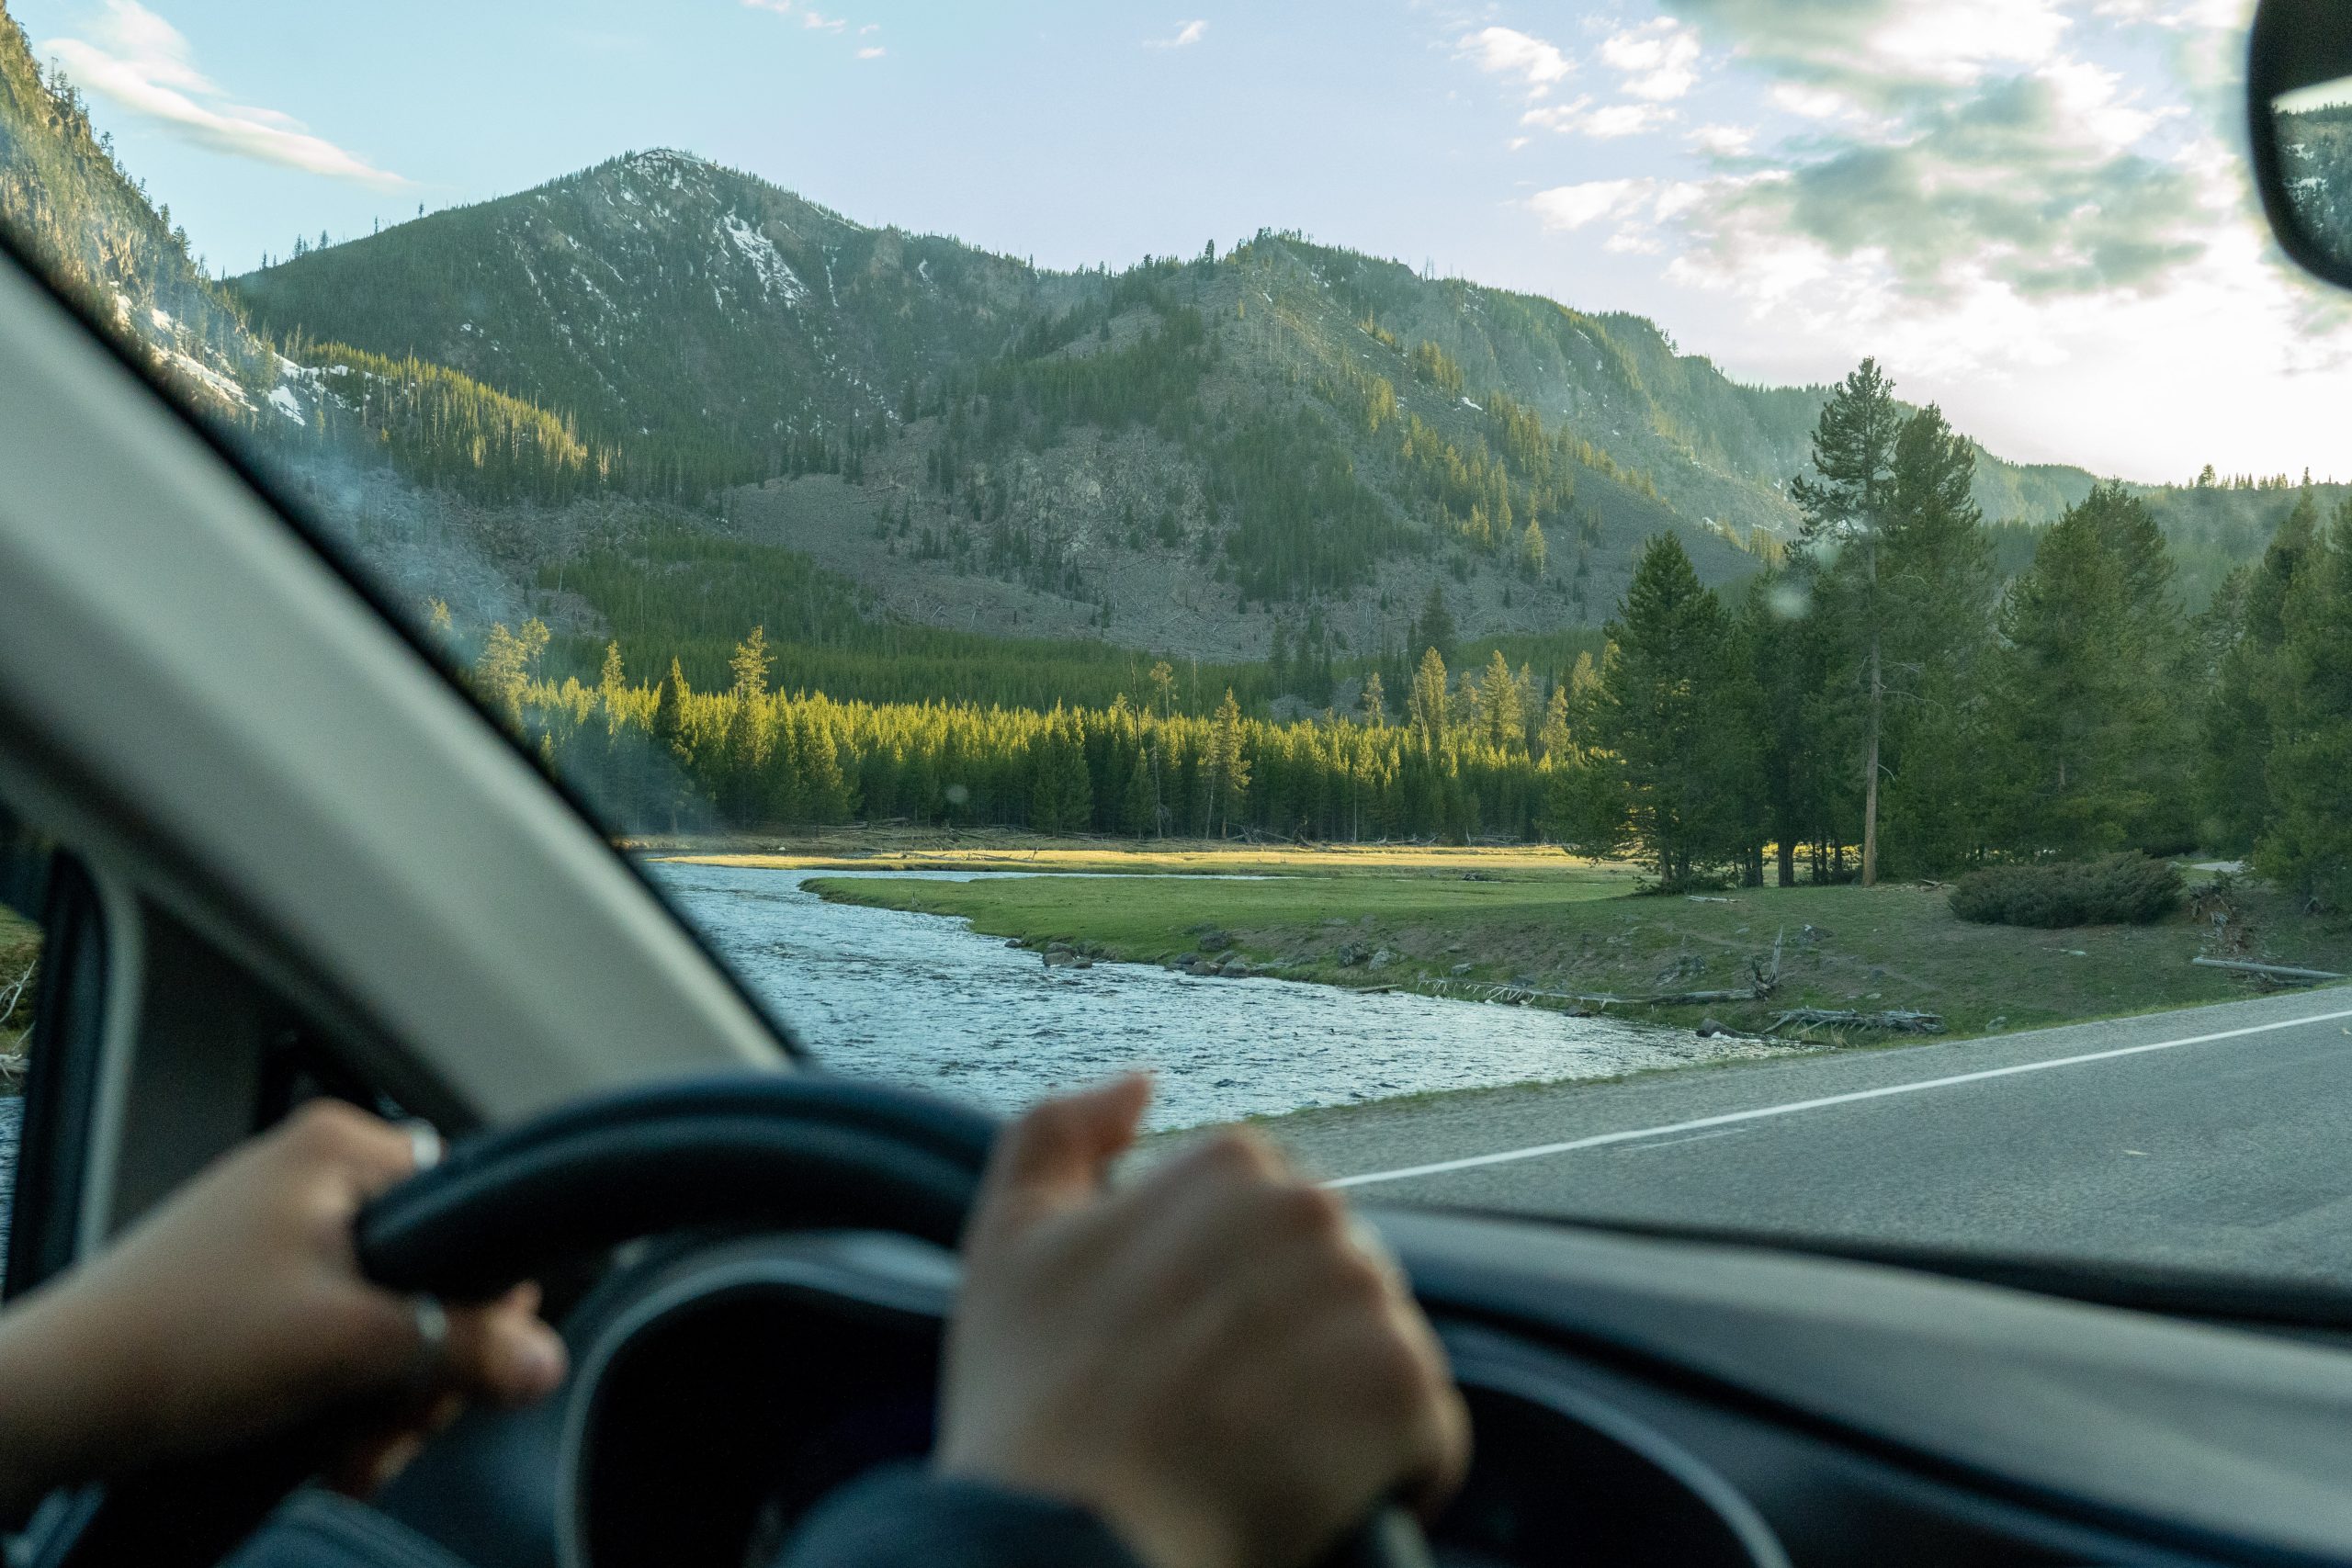 Découvrez les paysages à couper le souffle du parc national de Yellowstone avec le kit de conversion de camping-car de Roadloft. Découvrez les grands espaces du Wyoming comme jamais auparavant avec le confort et la commodité d'un van.